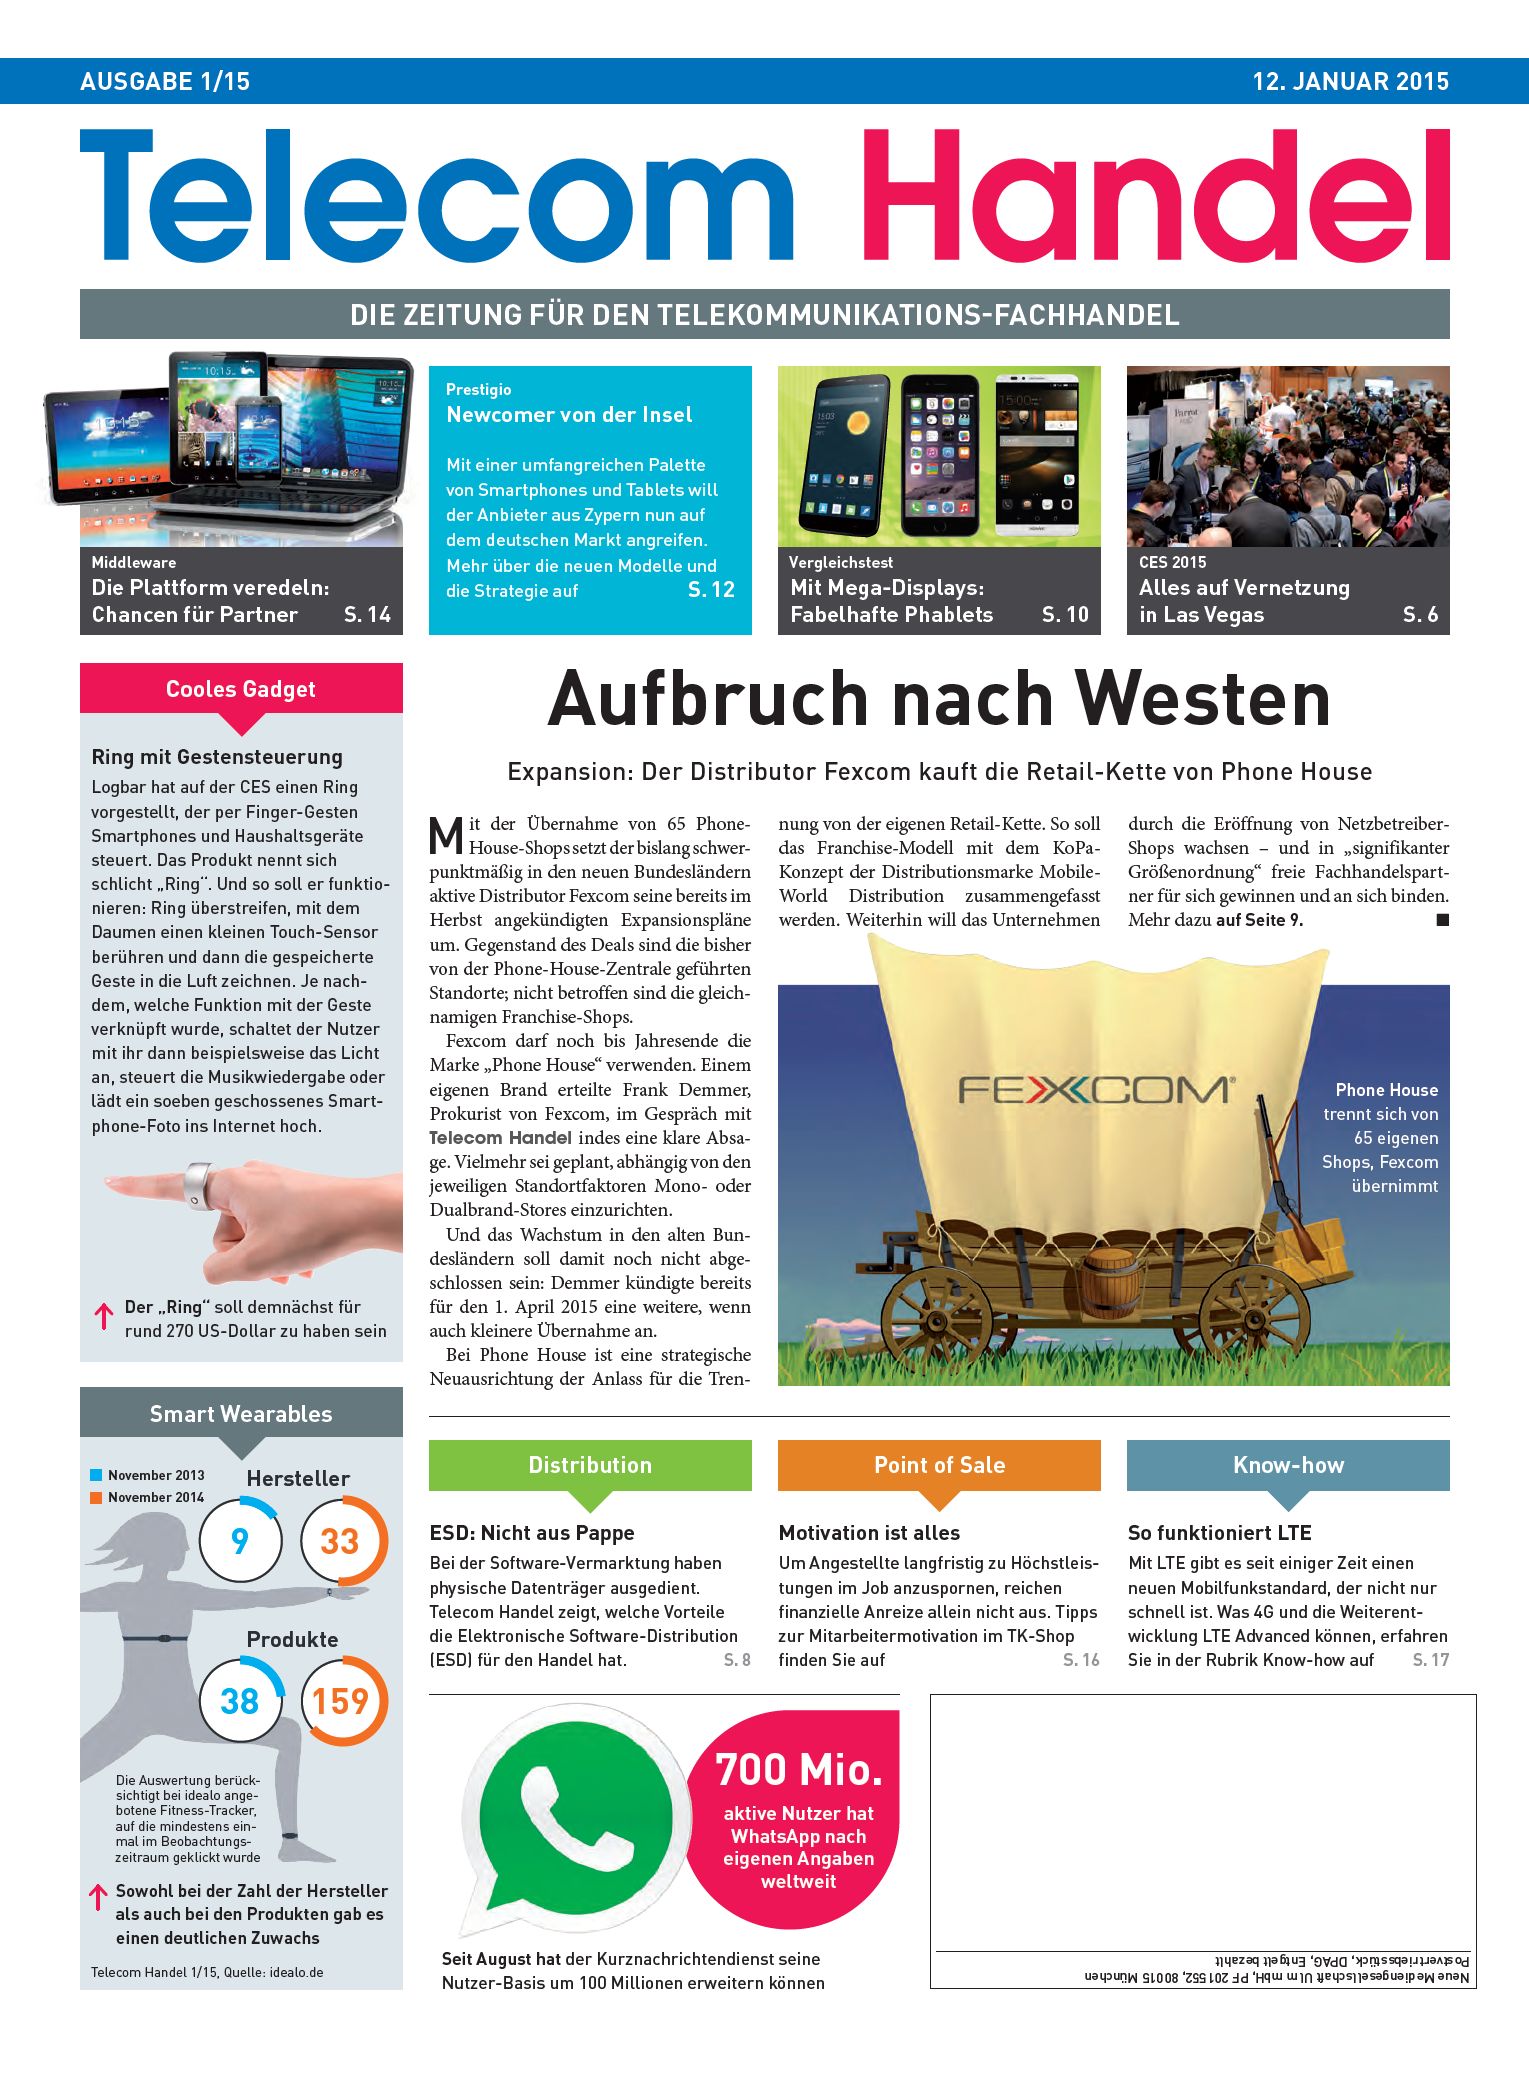 Telecom Handel Ausgabe 01/2015